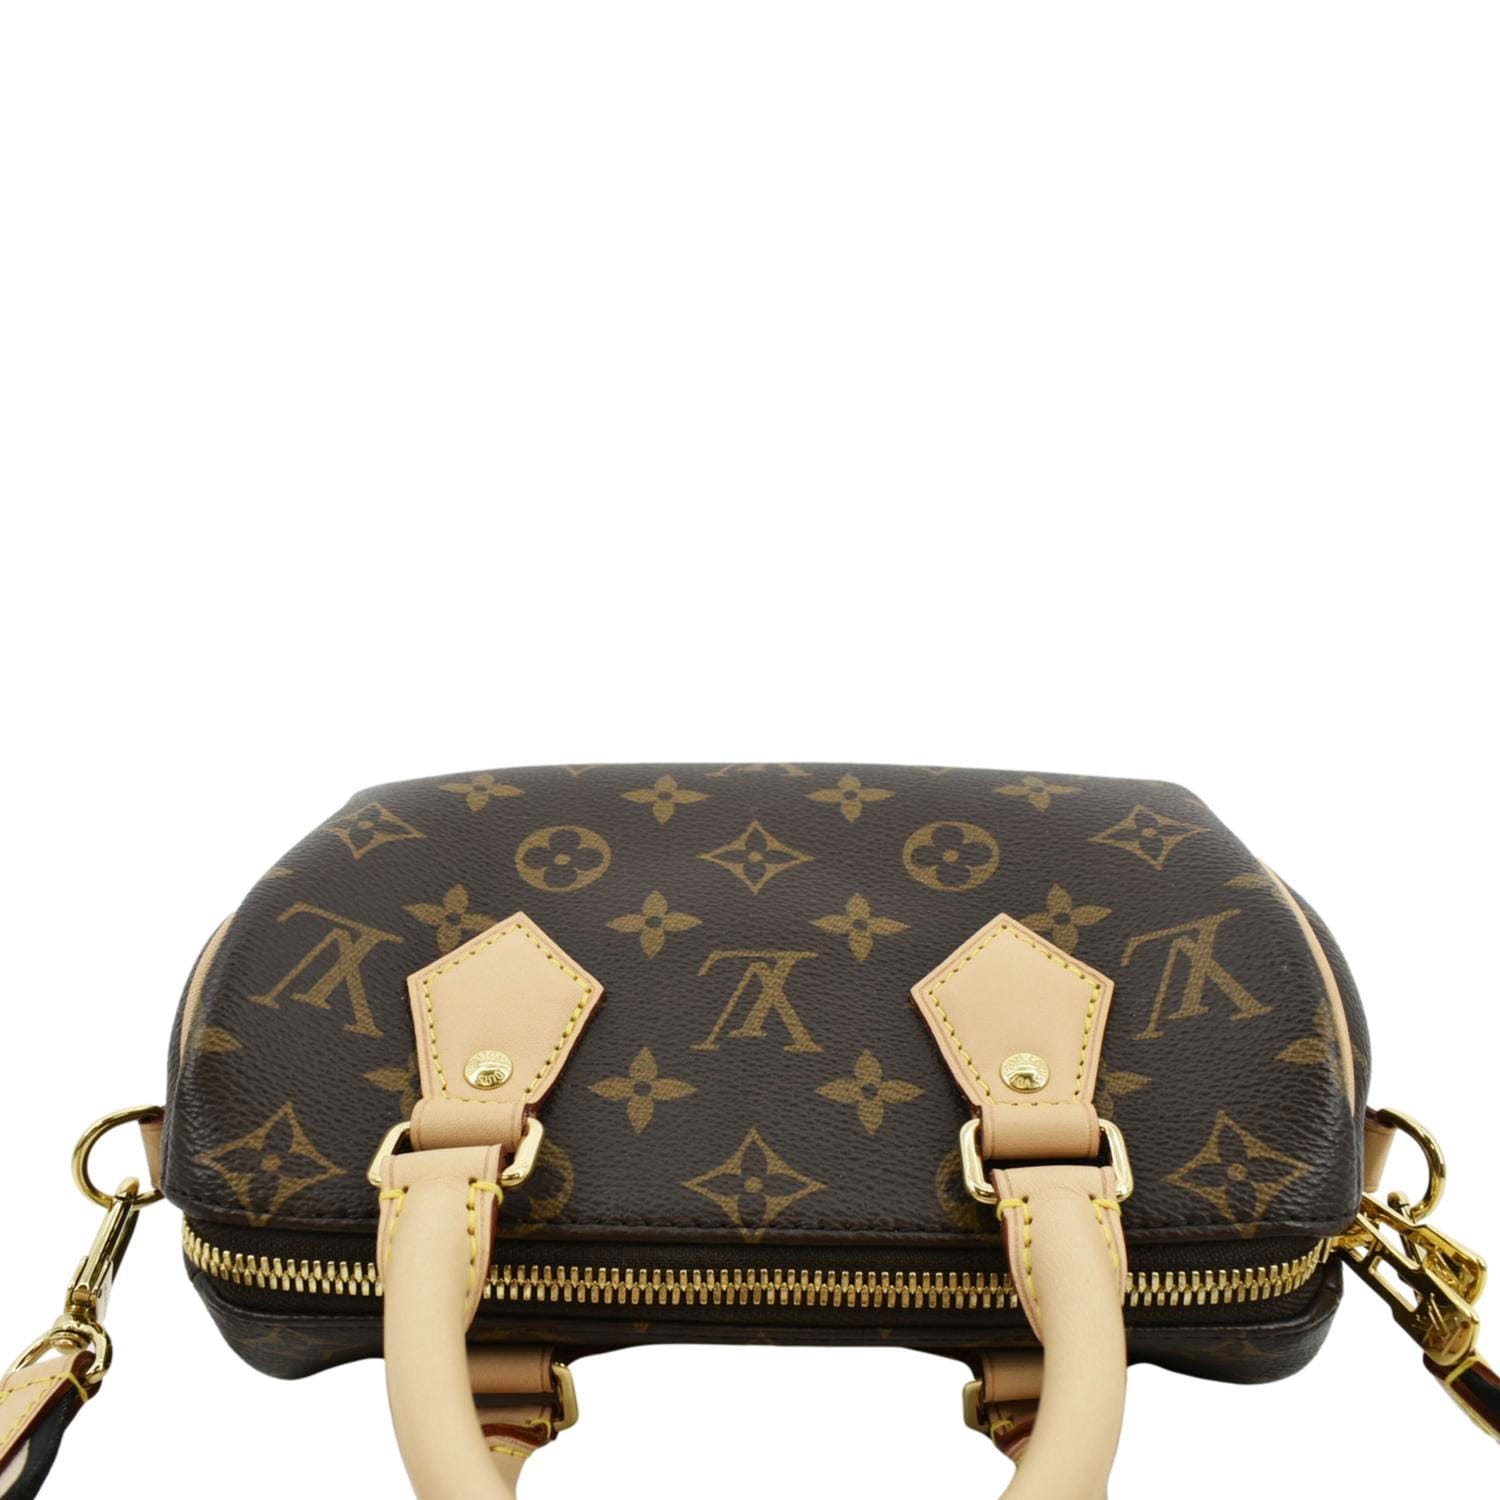 Louis Vuitton Speedy BB (Speedy 20), Luxury, Bags & Wallets on